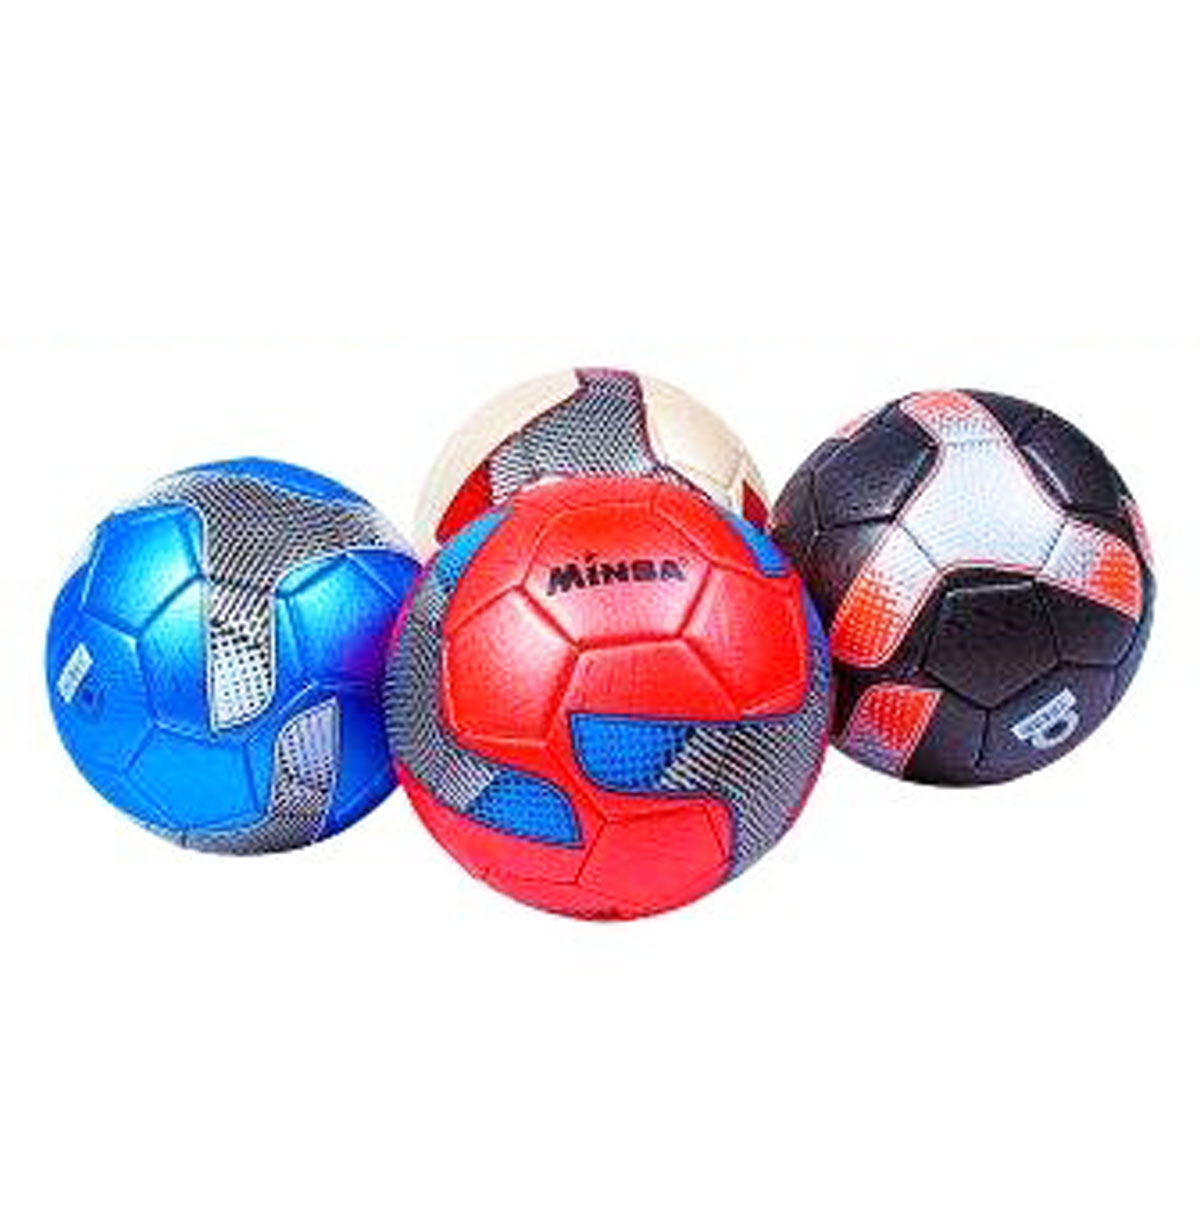 М'яч футбольний 'Minsa' в асортименті